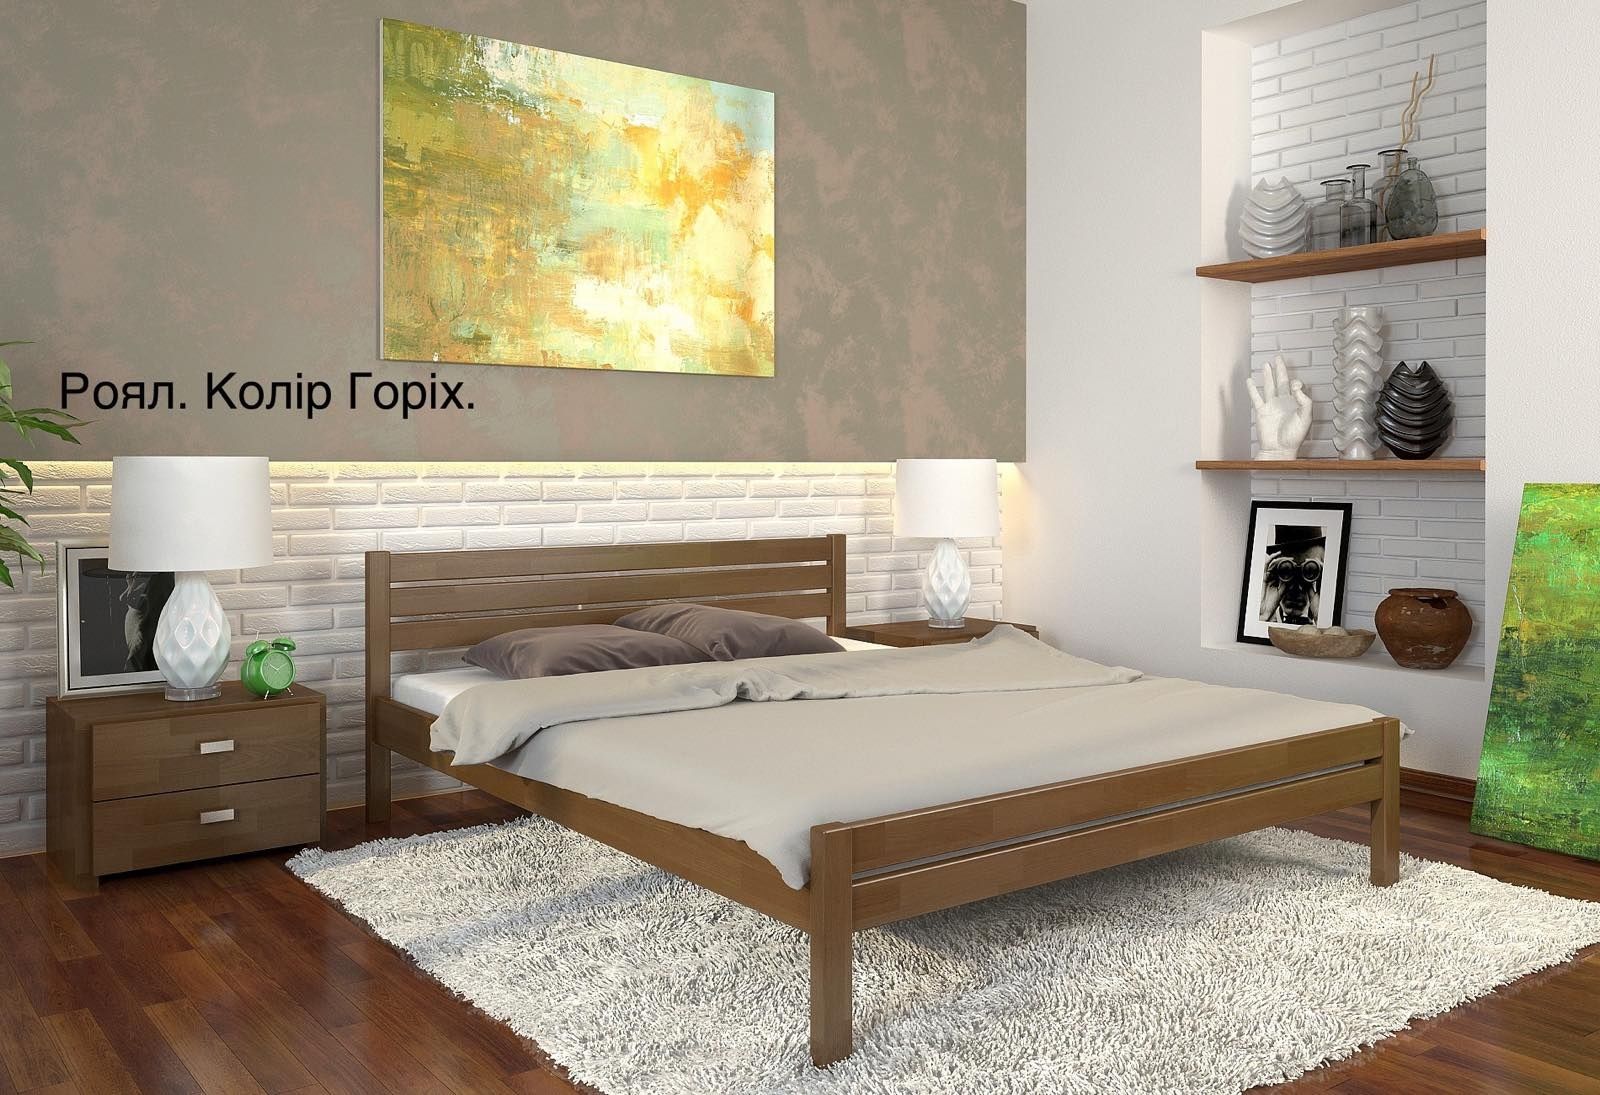 Акція. Ліжко нове, двоспальне 160х200, дерево, сосна, модель Роял.